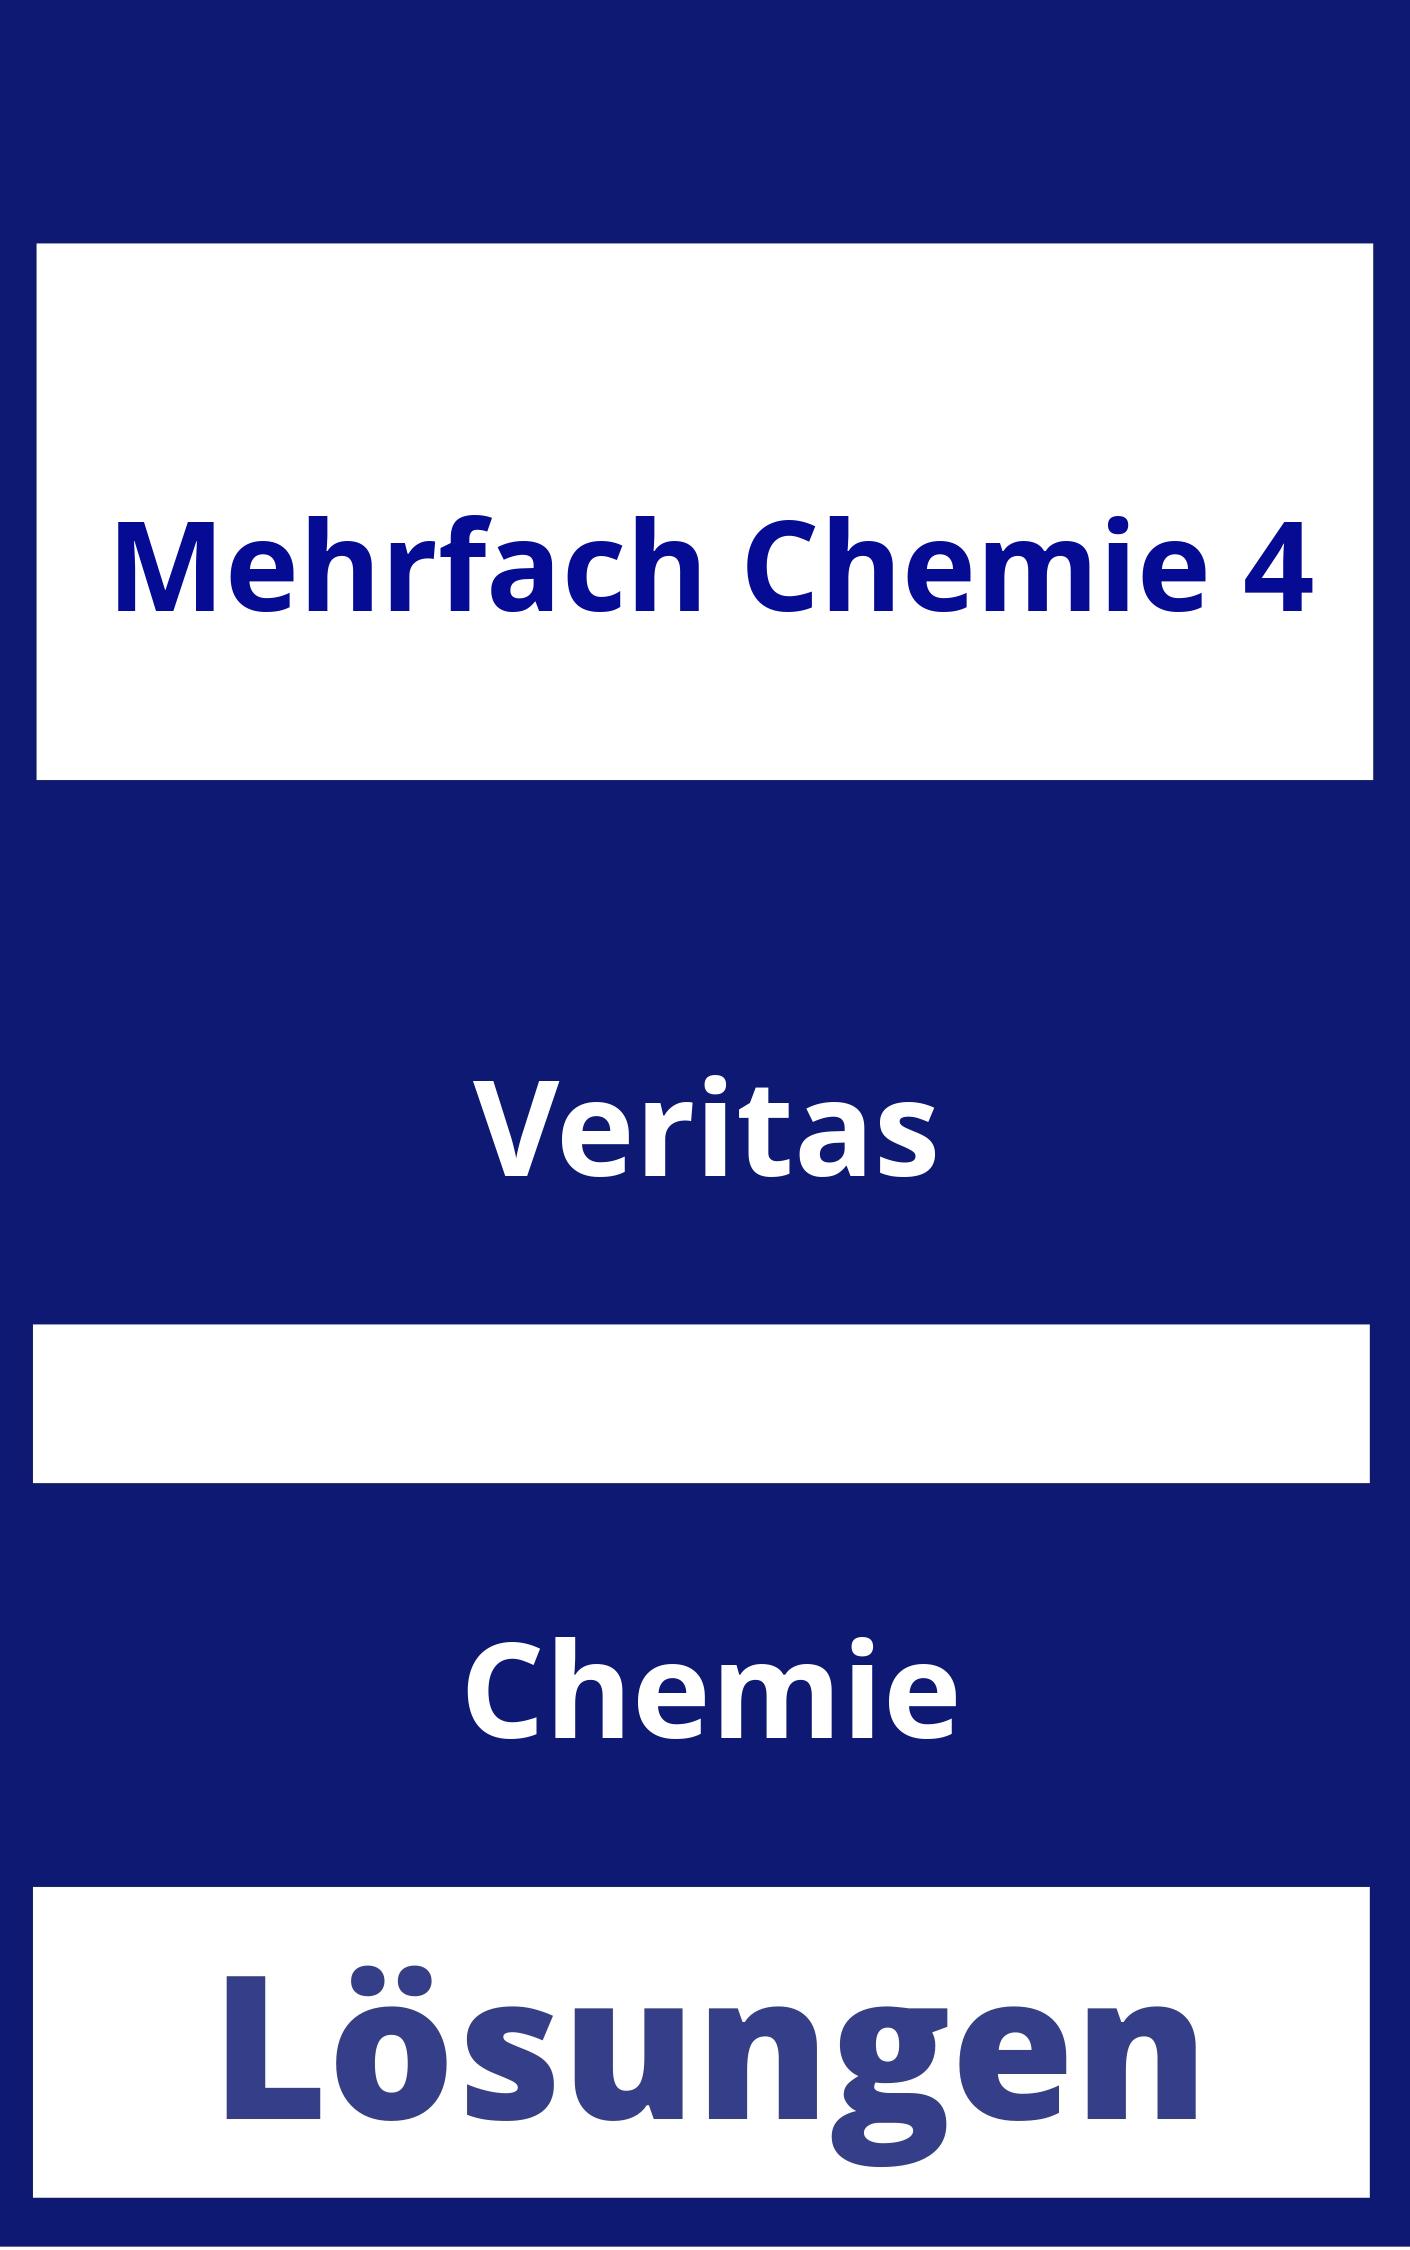 MEHRfach Chemie 4 Lösungen PDF